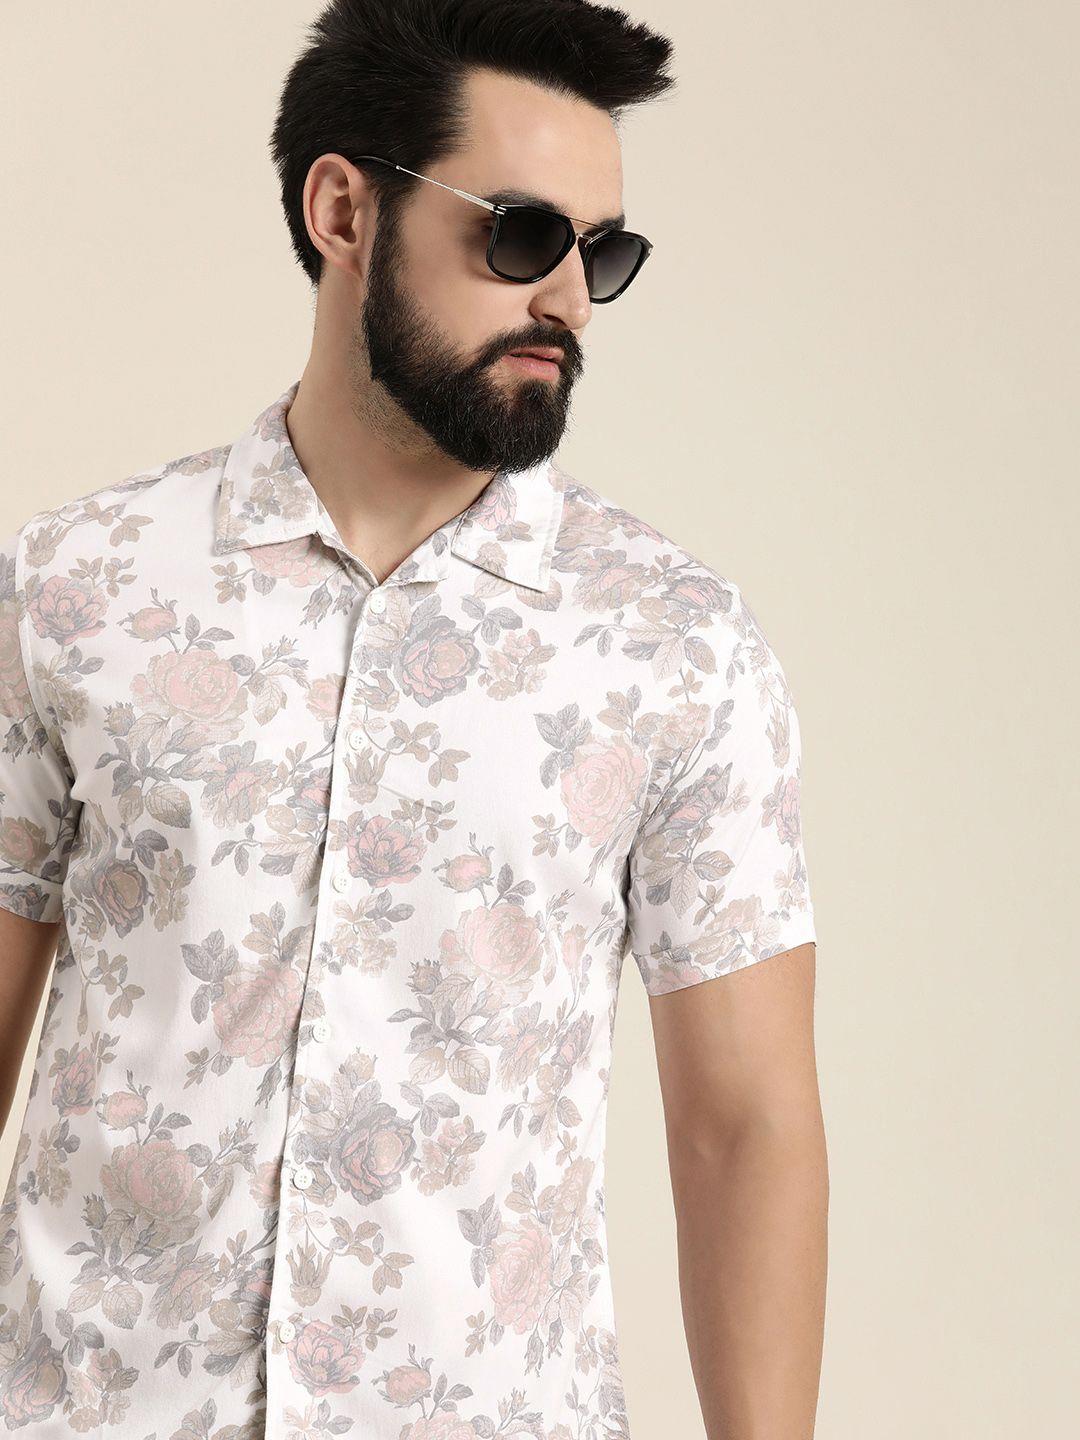 moda rapido men slim fit floral printed casual shirt